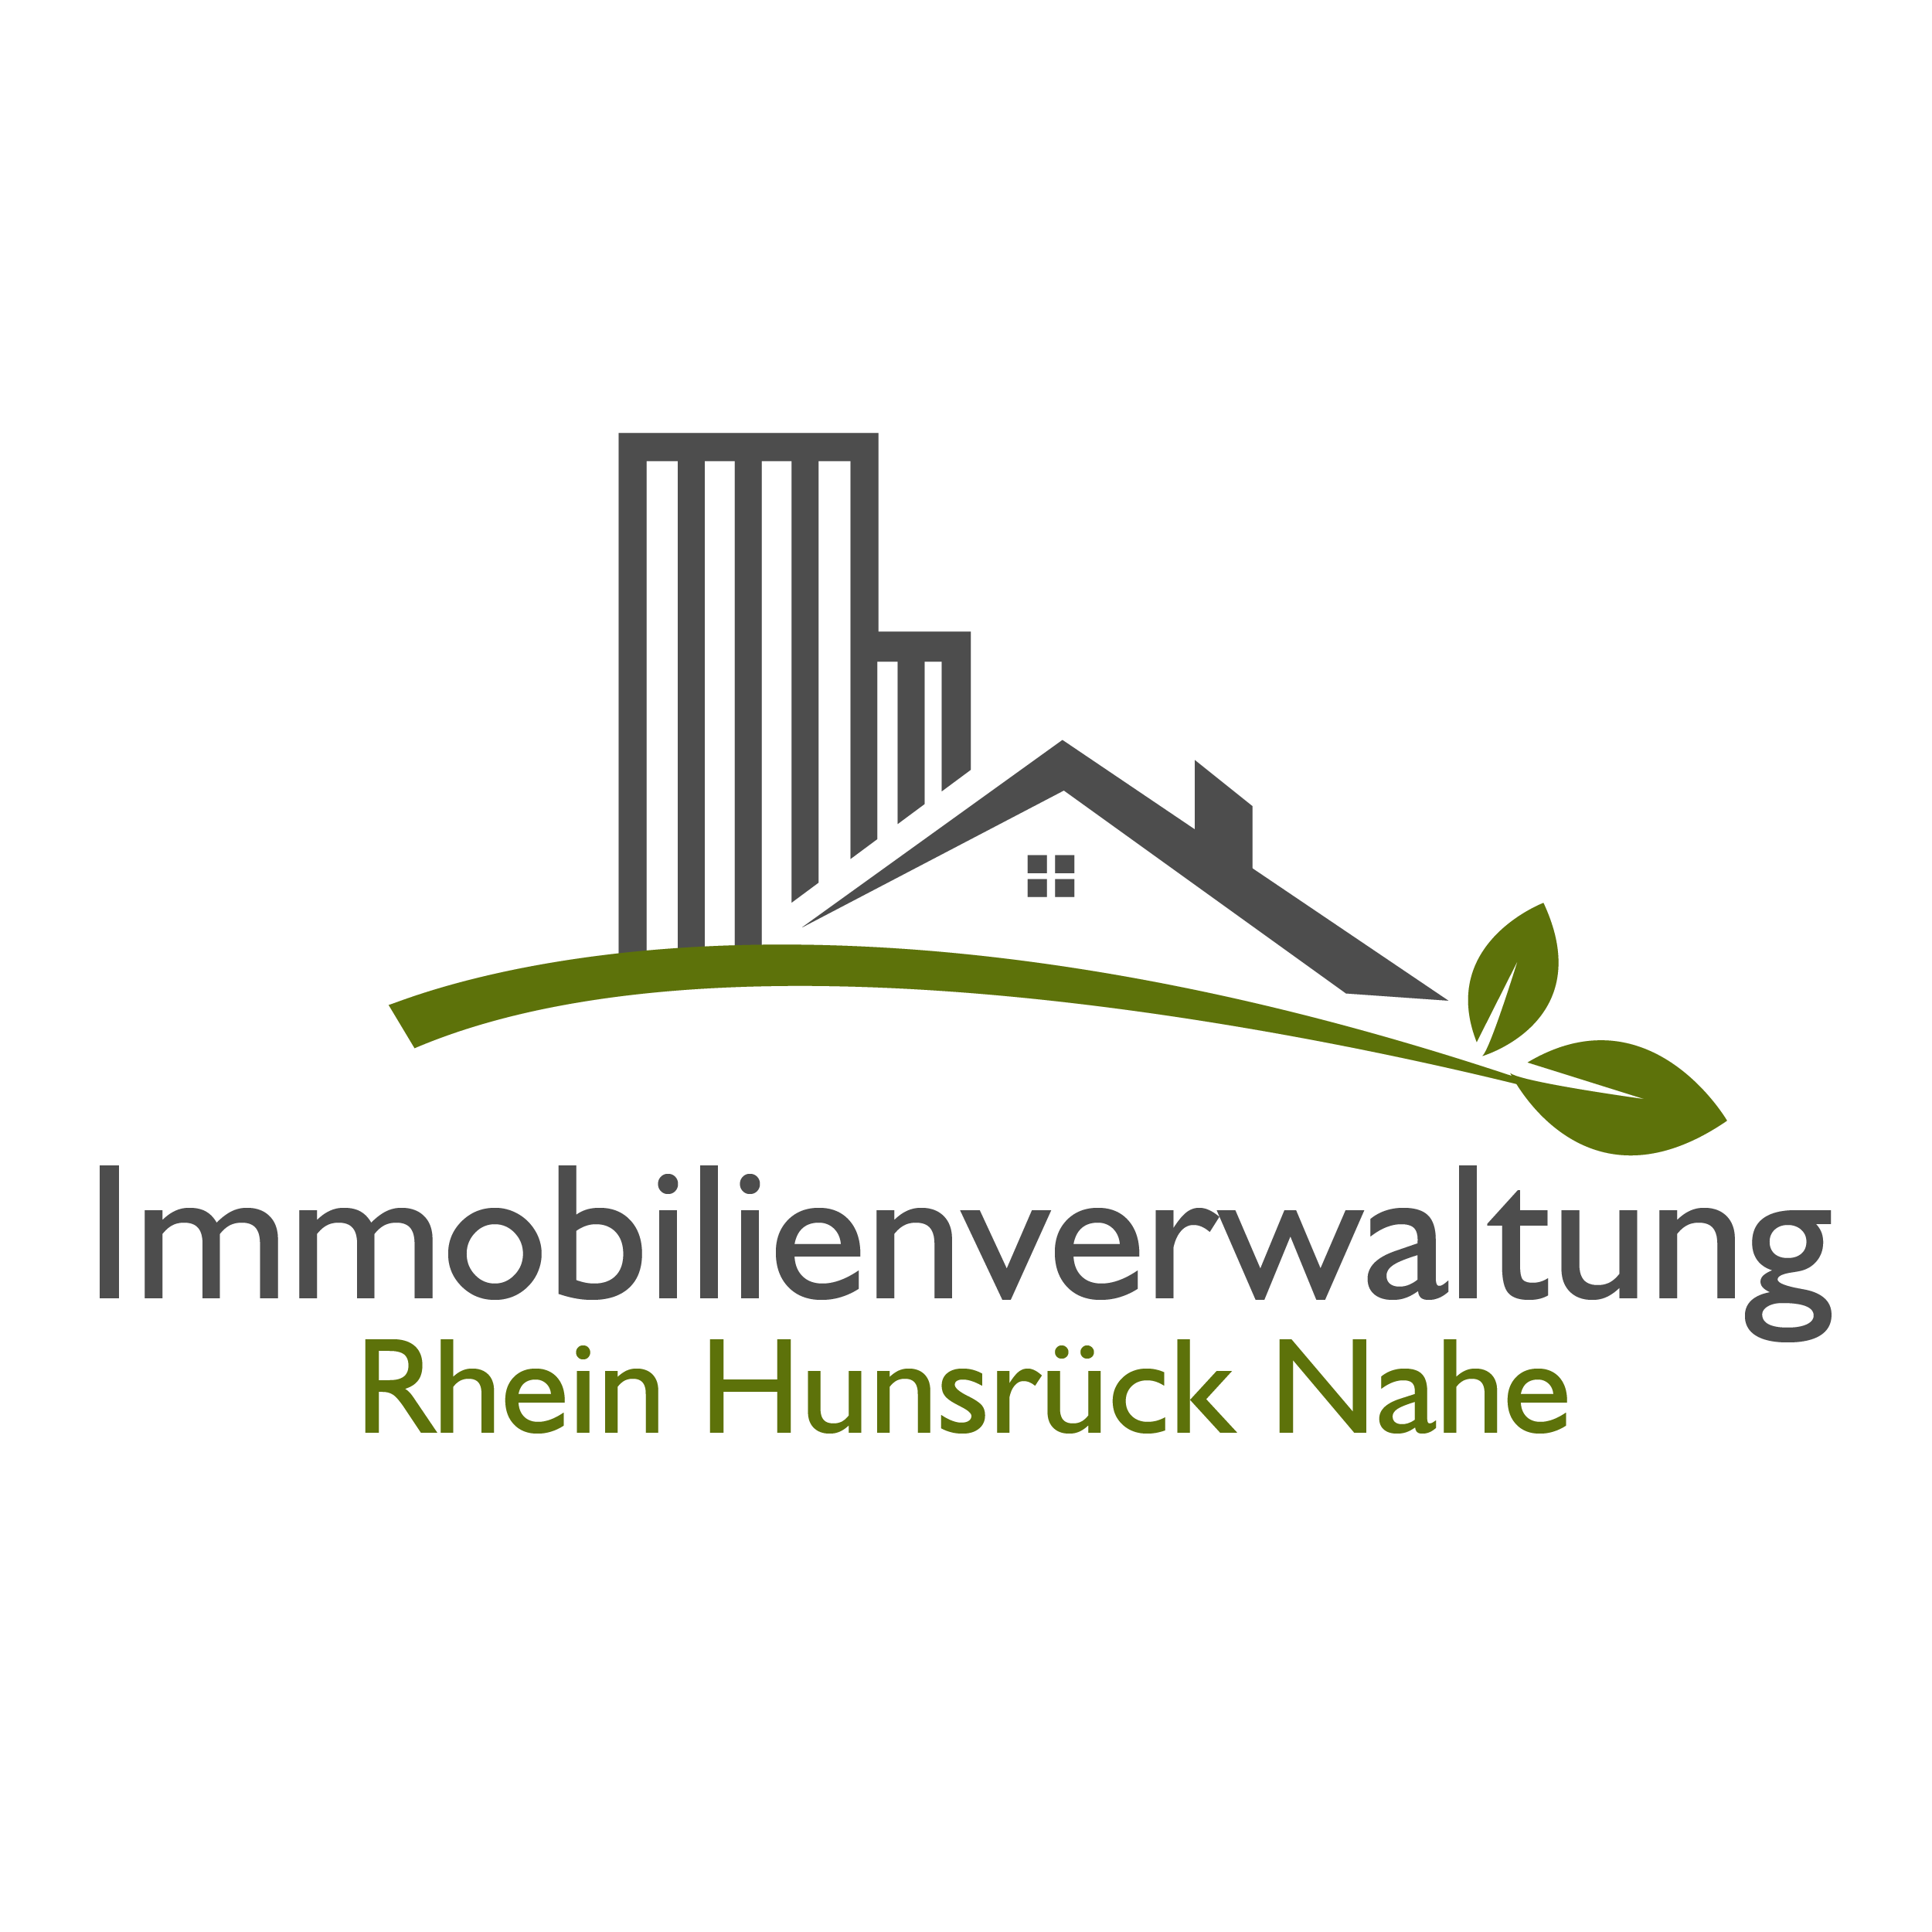 Dieses Bild zeigt das Logo des Unternehmens Immobilienverwaltung Rhein Hunsrück Nahe